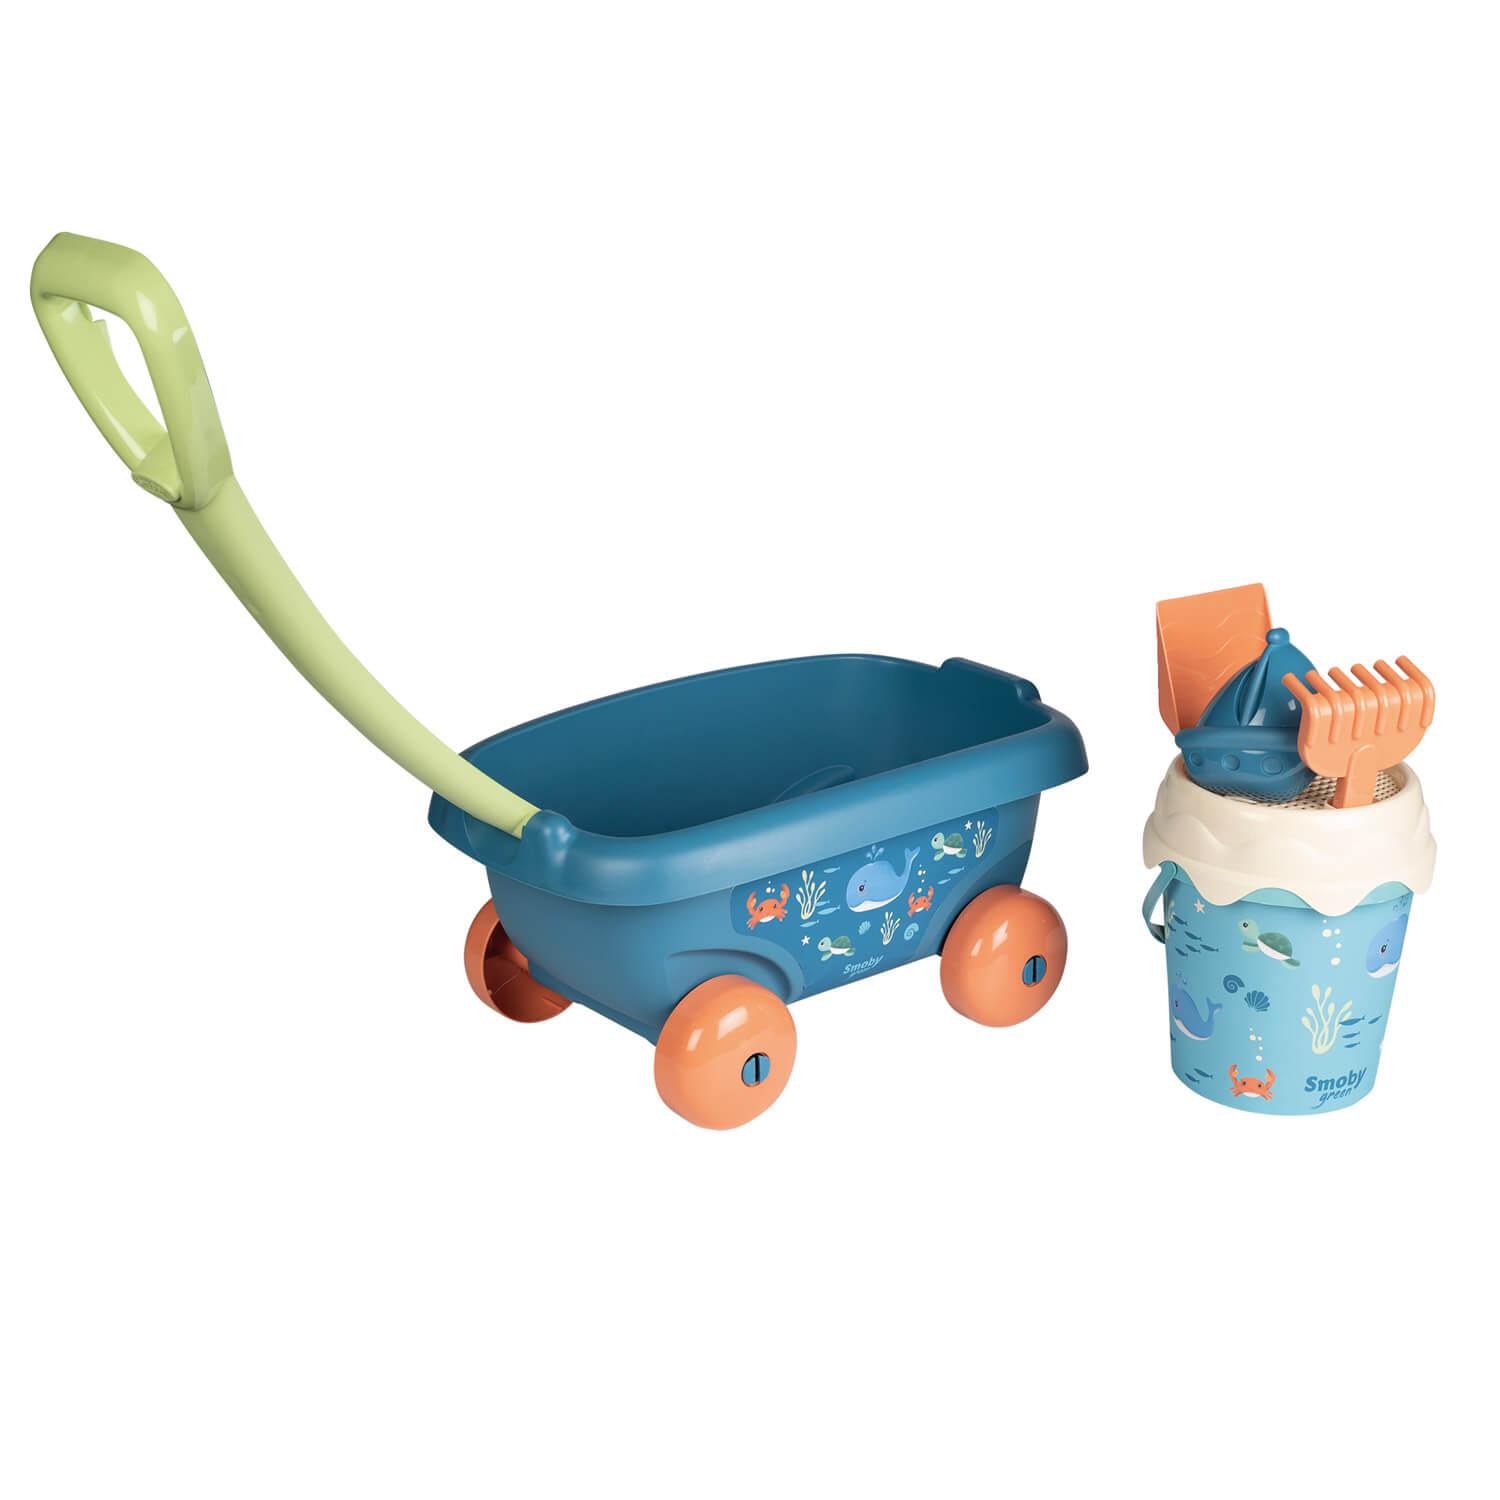 Smoby Toys Little Smoby Siège de bain pour bébé à partir de 6 mois